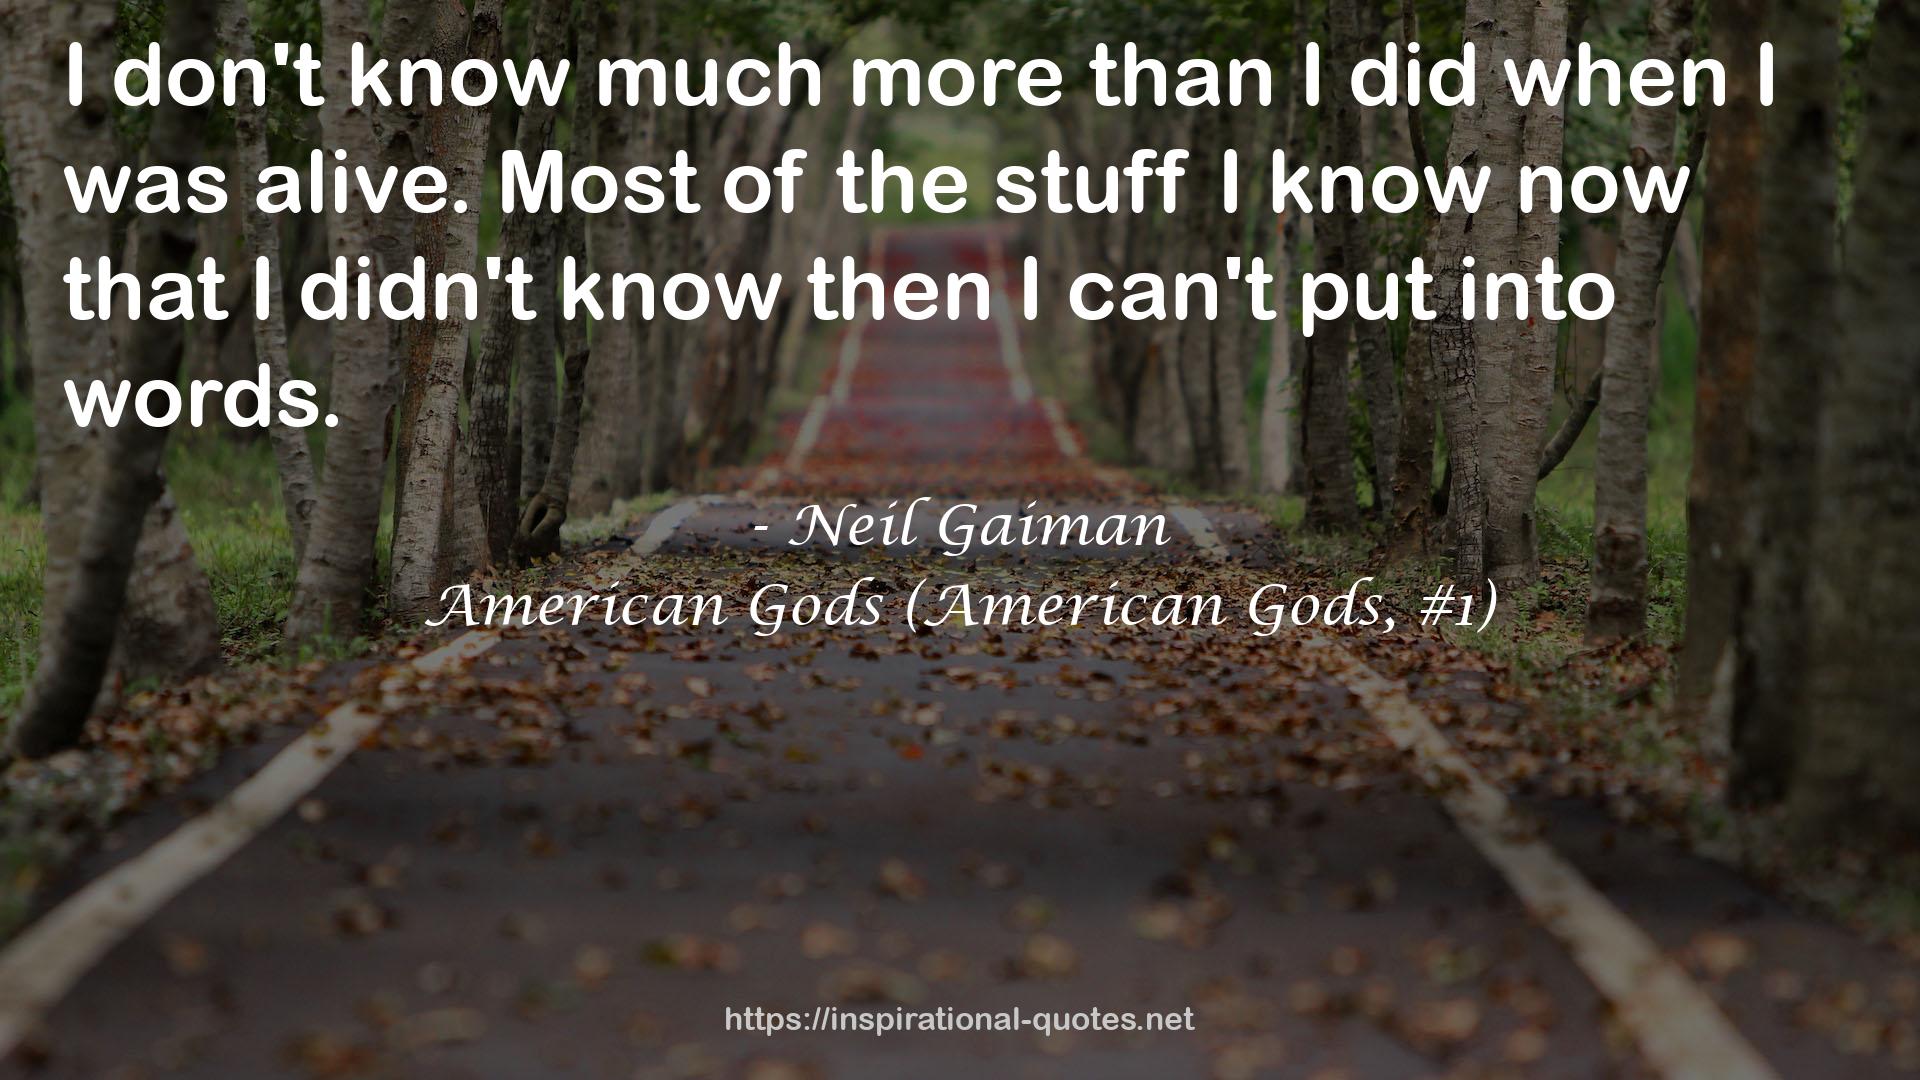 Neil Gaiman QUOTES